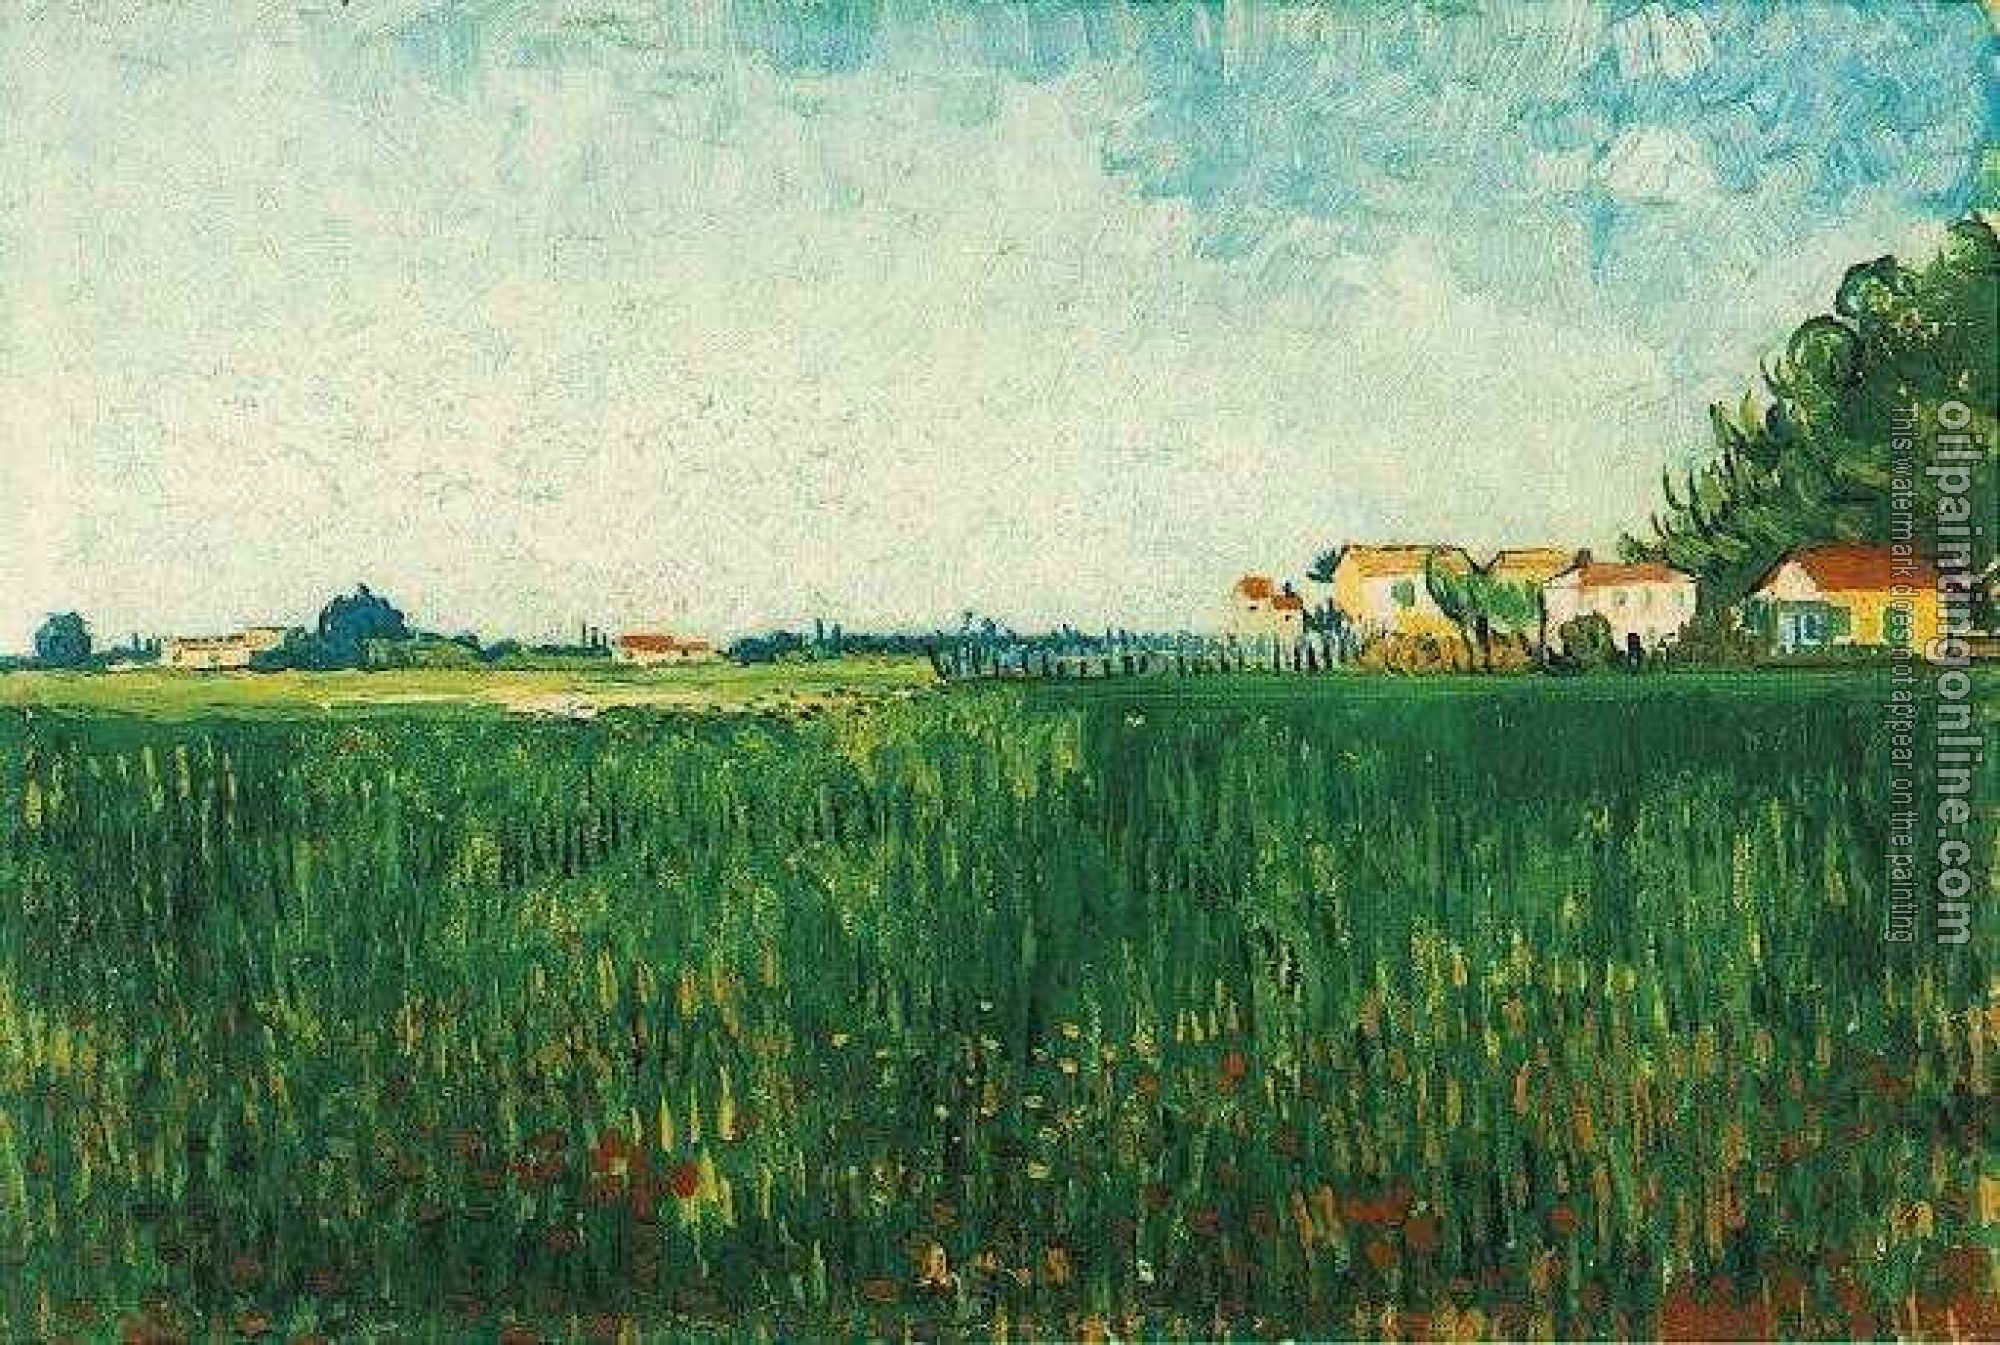 Gogh, Vincent van - Farmhouses in a Wheat Field Near Arles